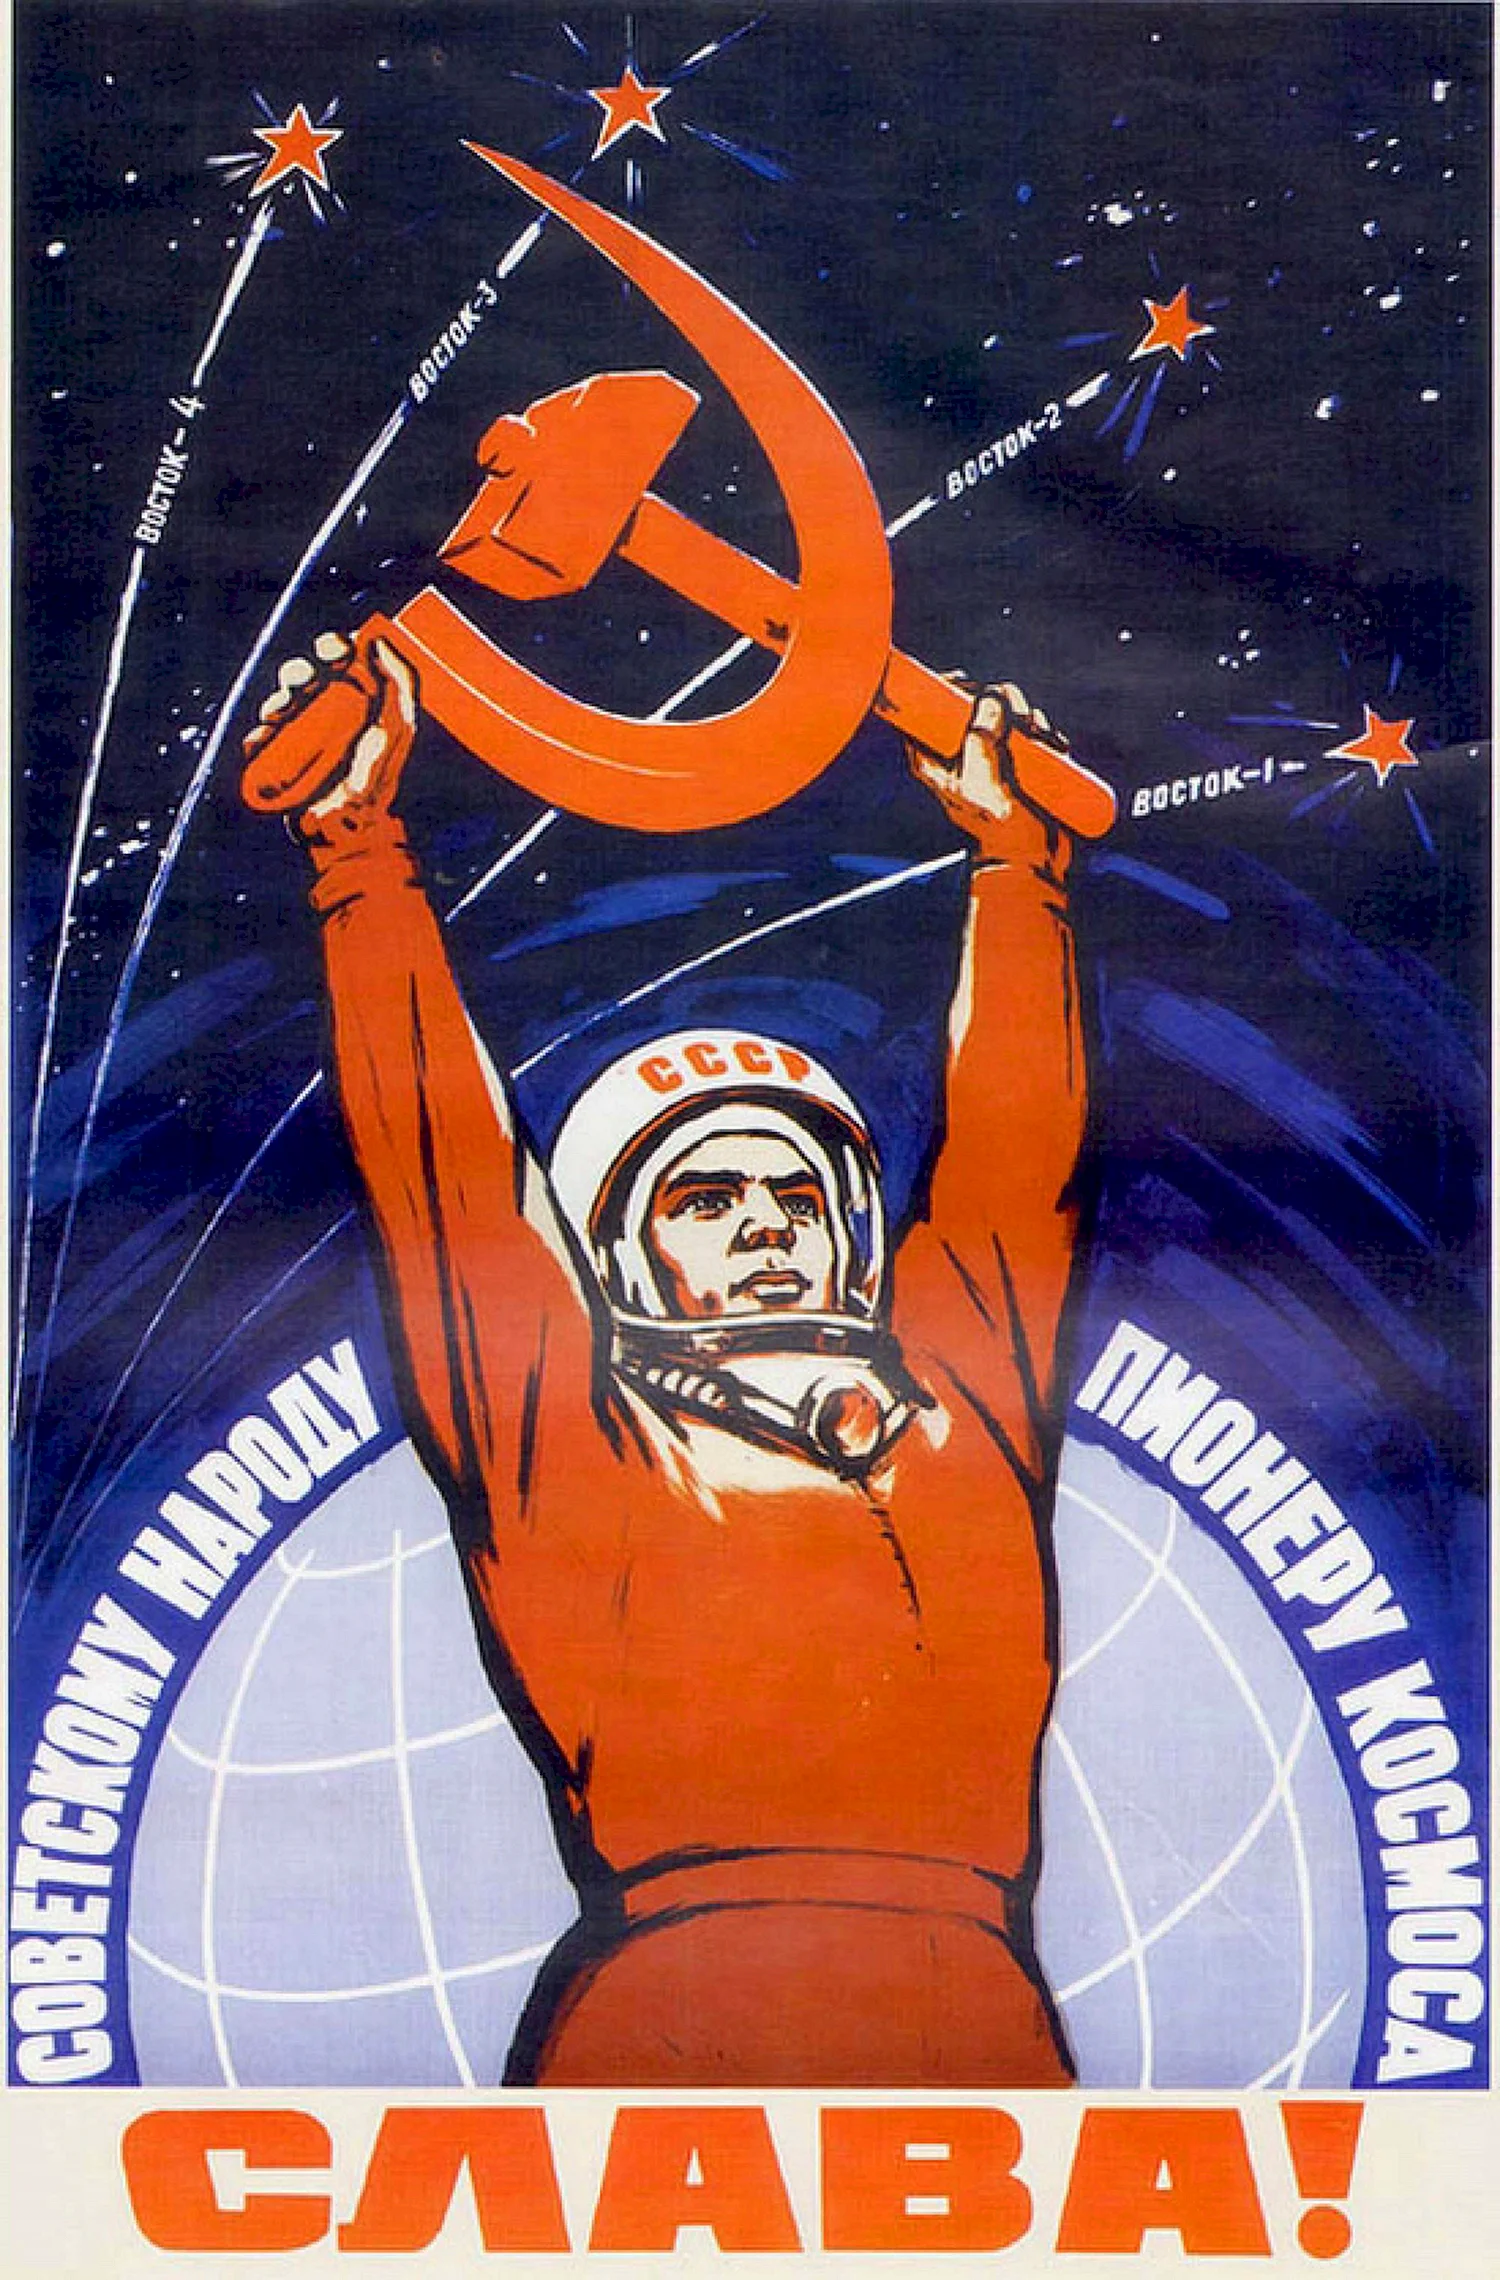 Плакат Слава советскому народу пионеру космоса